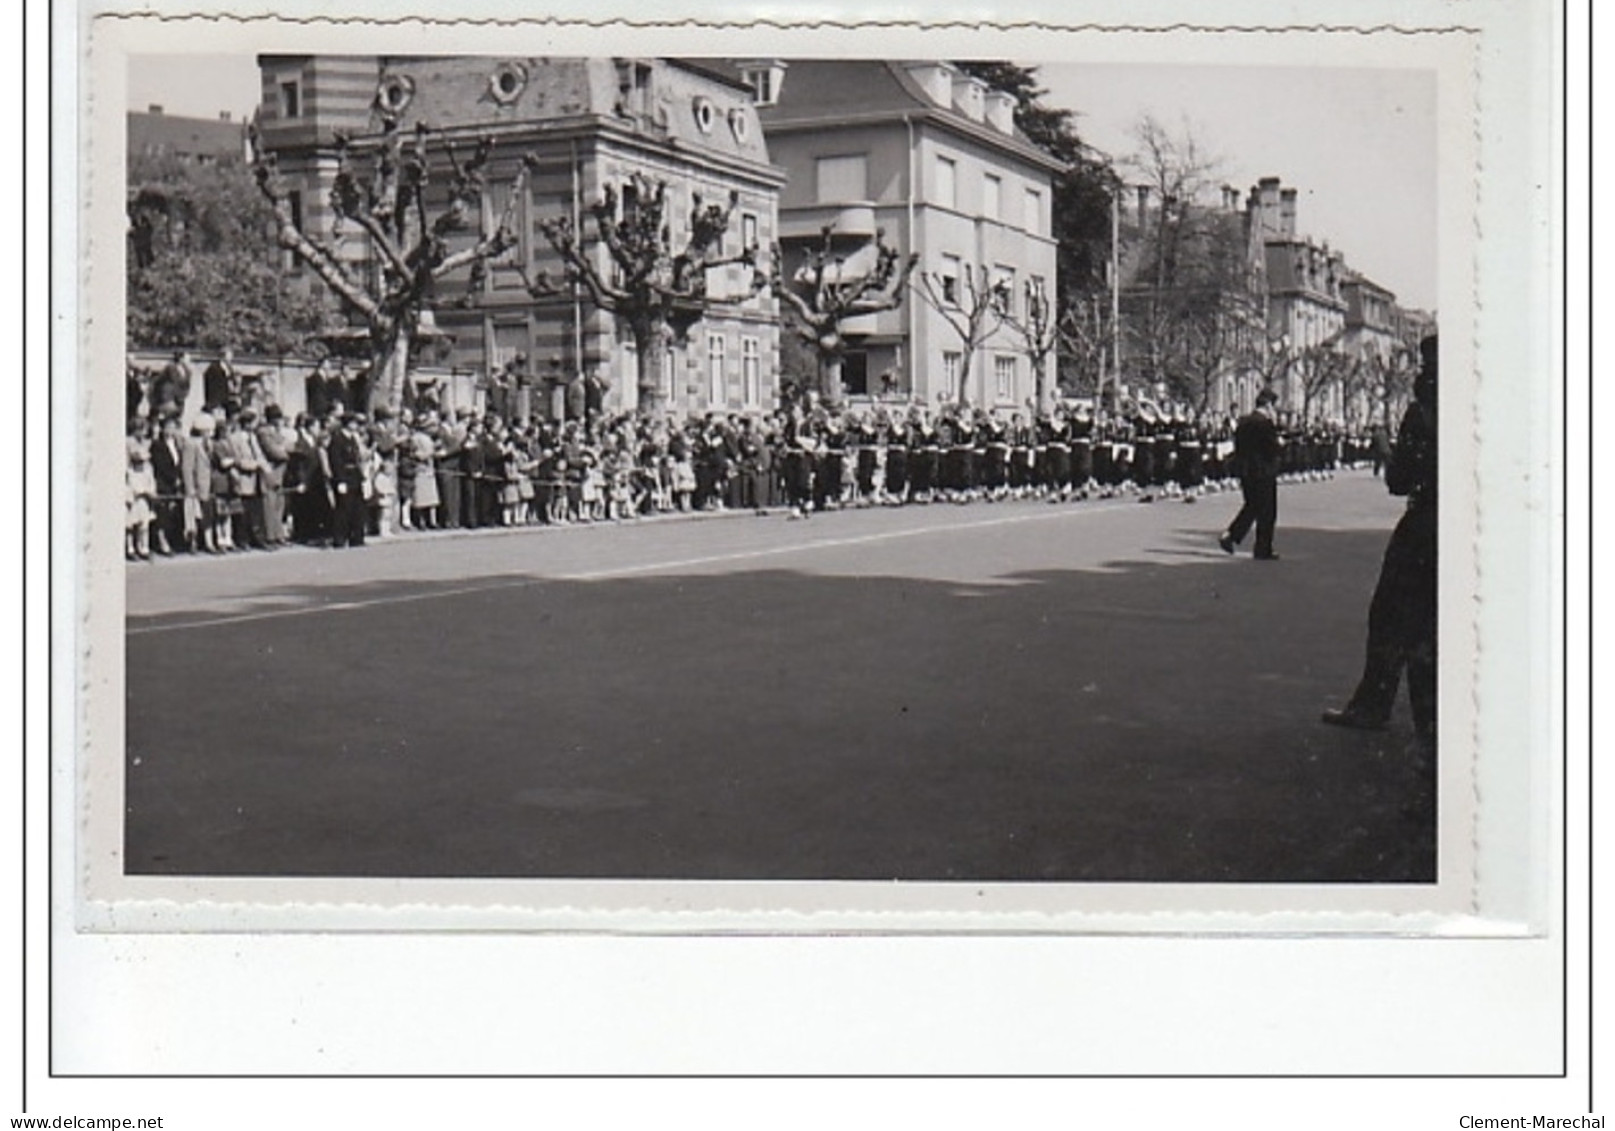 STRASBOURG : lot de 15 photos format cartes photos d'un défilé militaire vers 1945 - très bon état